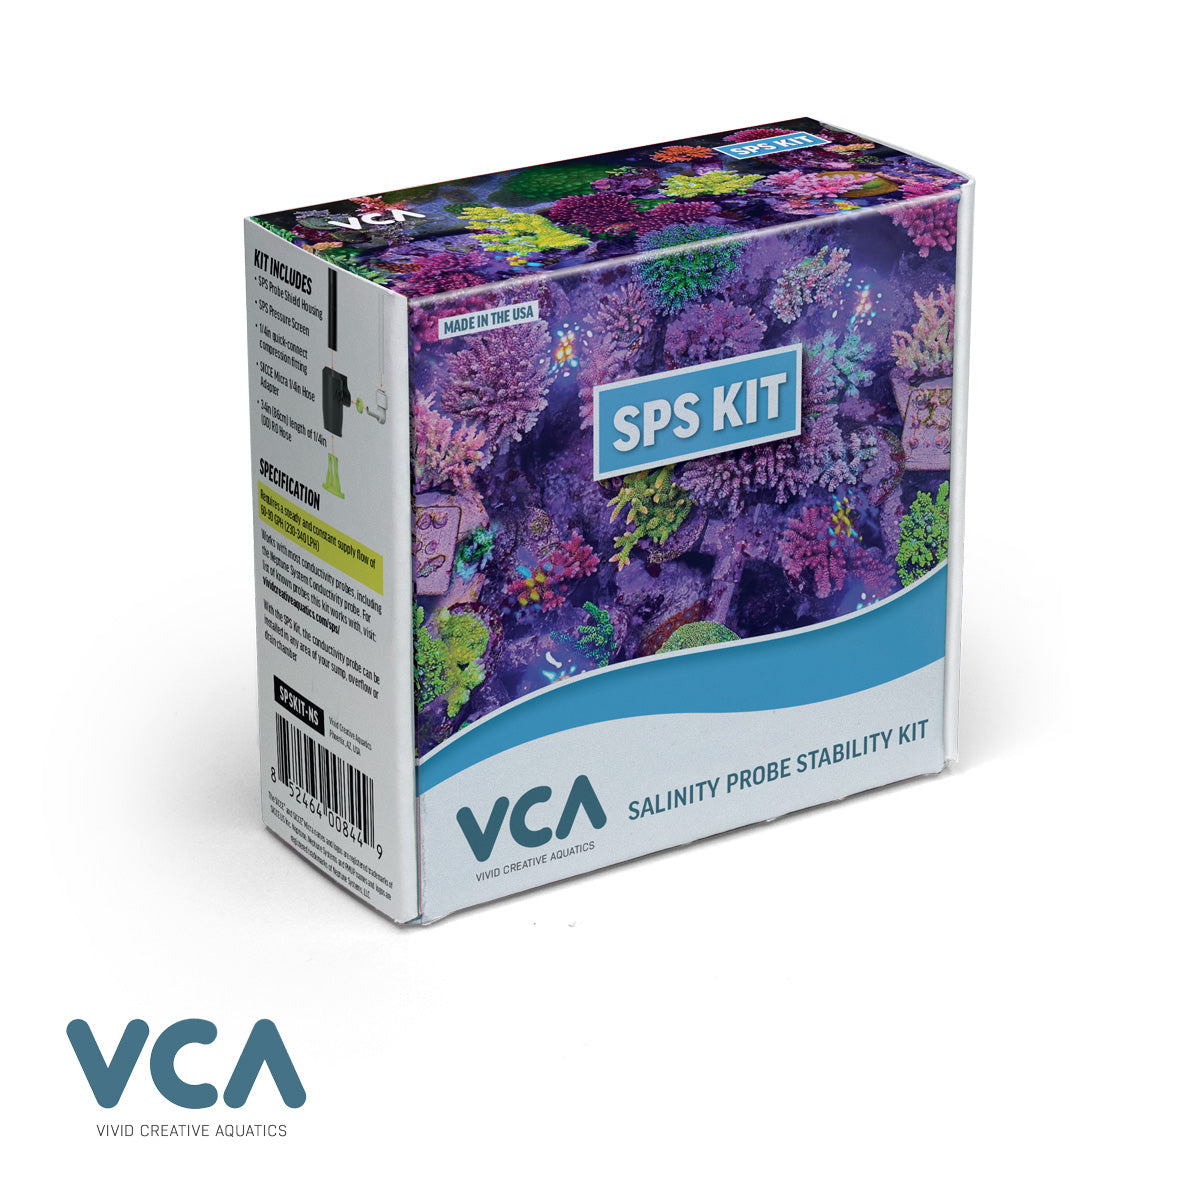 Vivid Creative Aquatics SPS Kit – The Salinity Probe Stability Kit